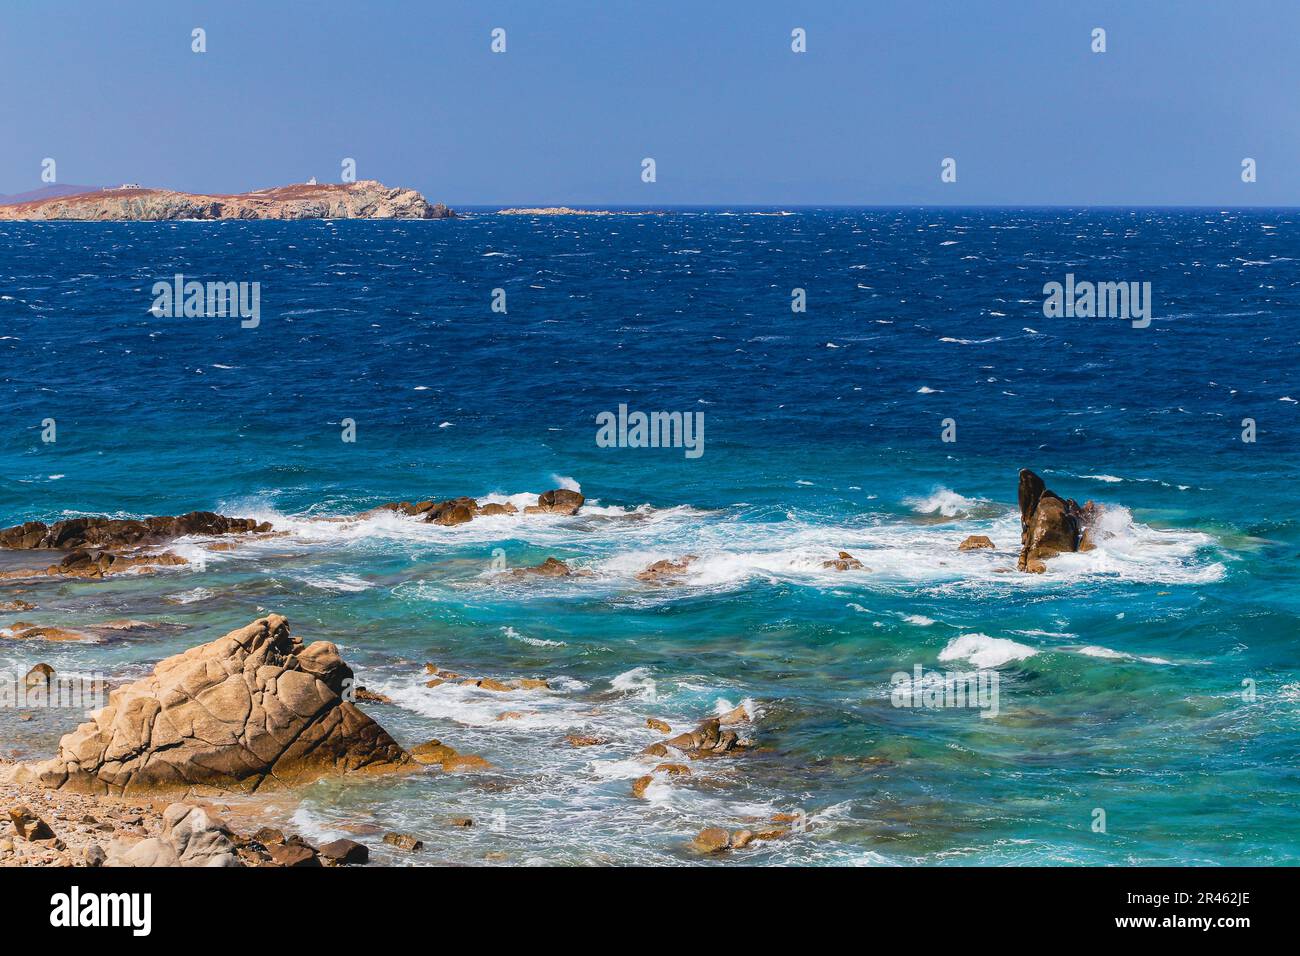 Le ciel bleu au-dessus de la mer avec des vagues s'écrasant sur les rochers à Mykonos, Grèce Banque D'Images